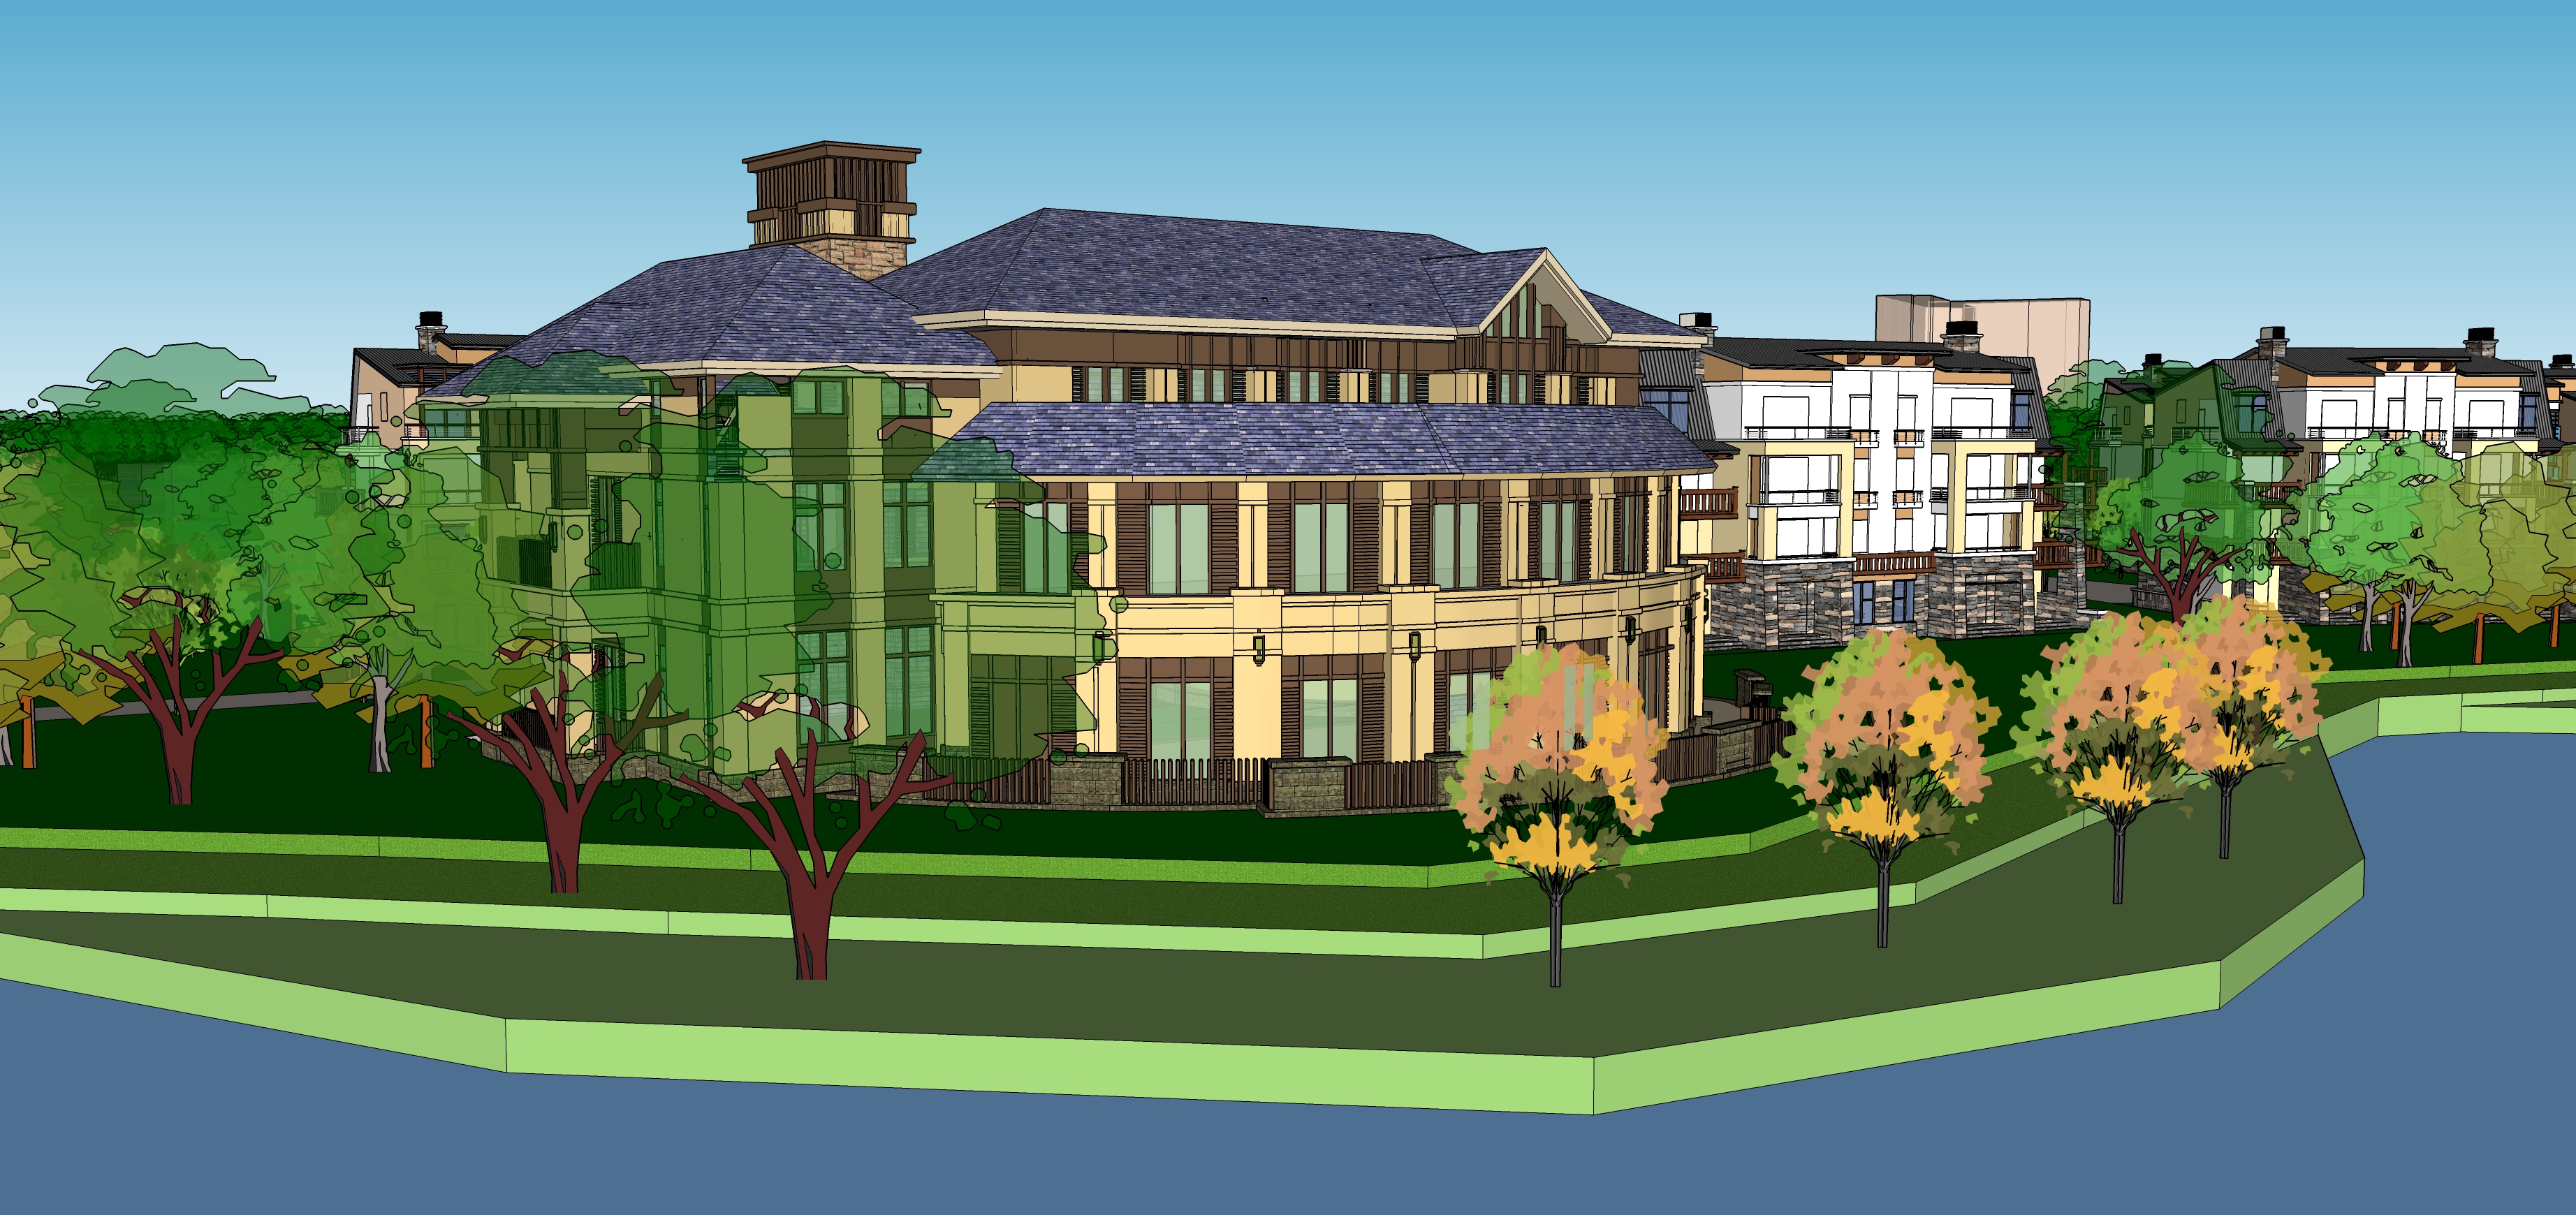 中式院落与欧式别墅群住宅规划方案sketchup模型